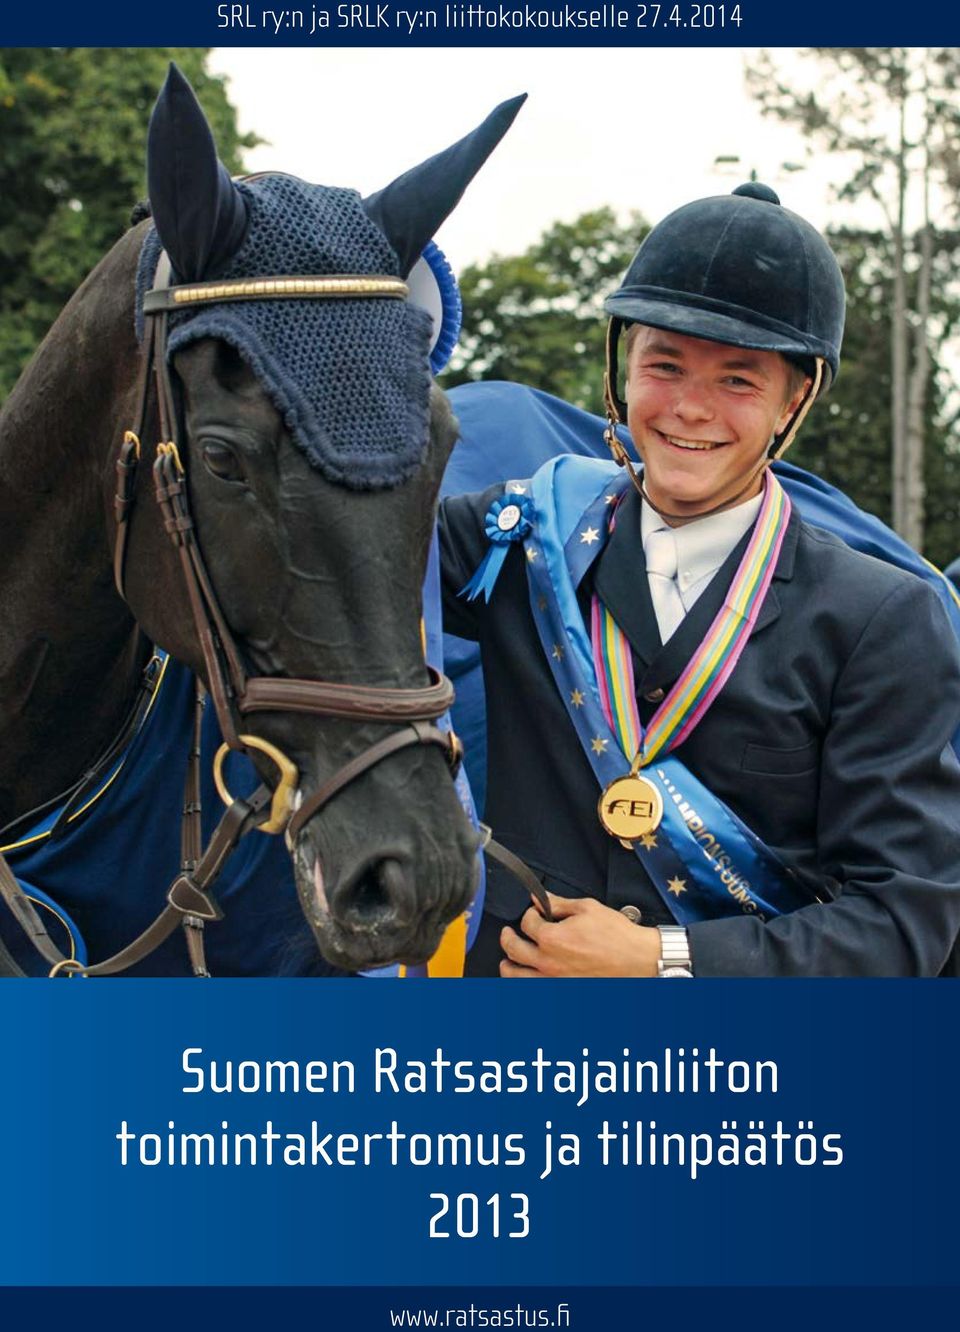 2014 Suomen Ratsastajainliiton